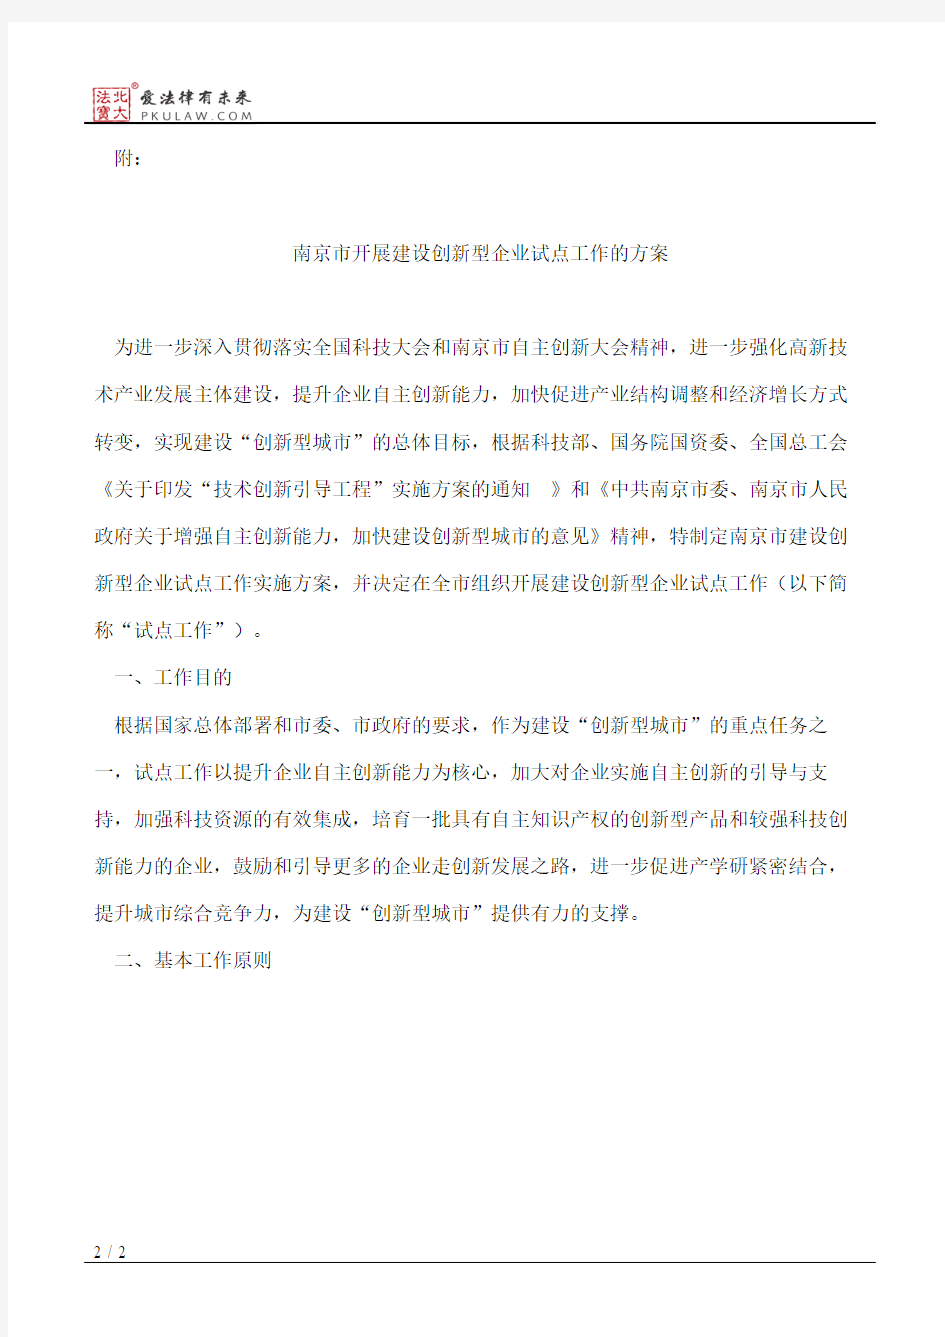 南京市科学技术局关于印发《南京市开展建设创新型企业试点工作的